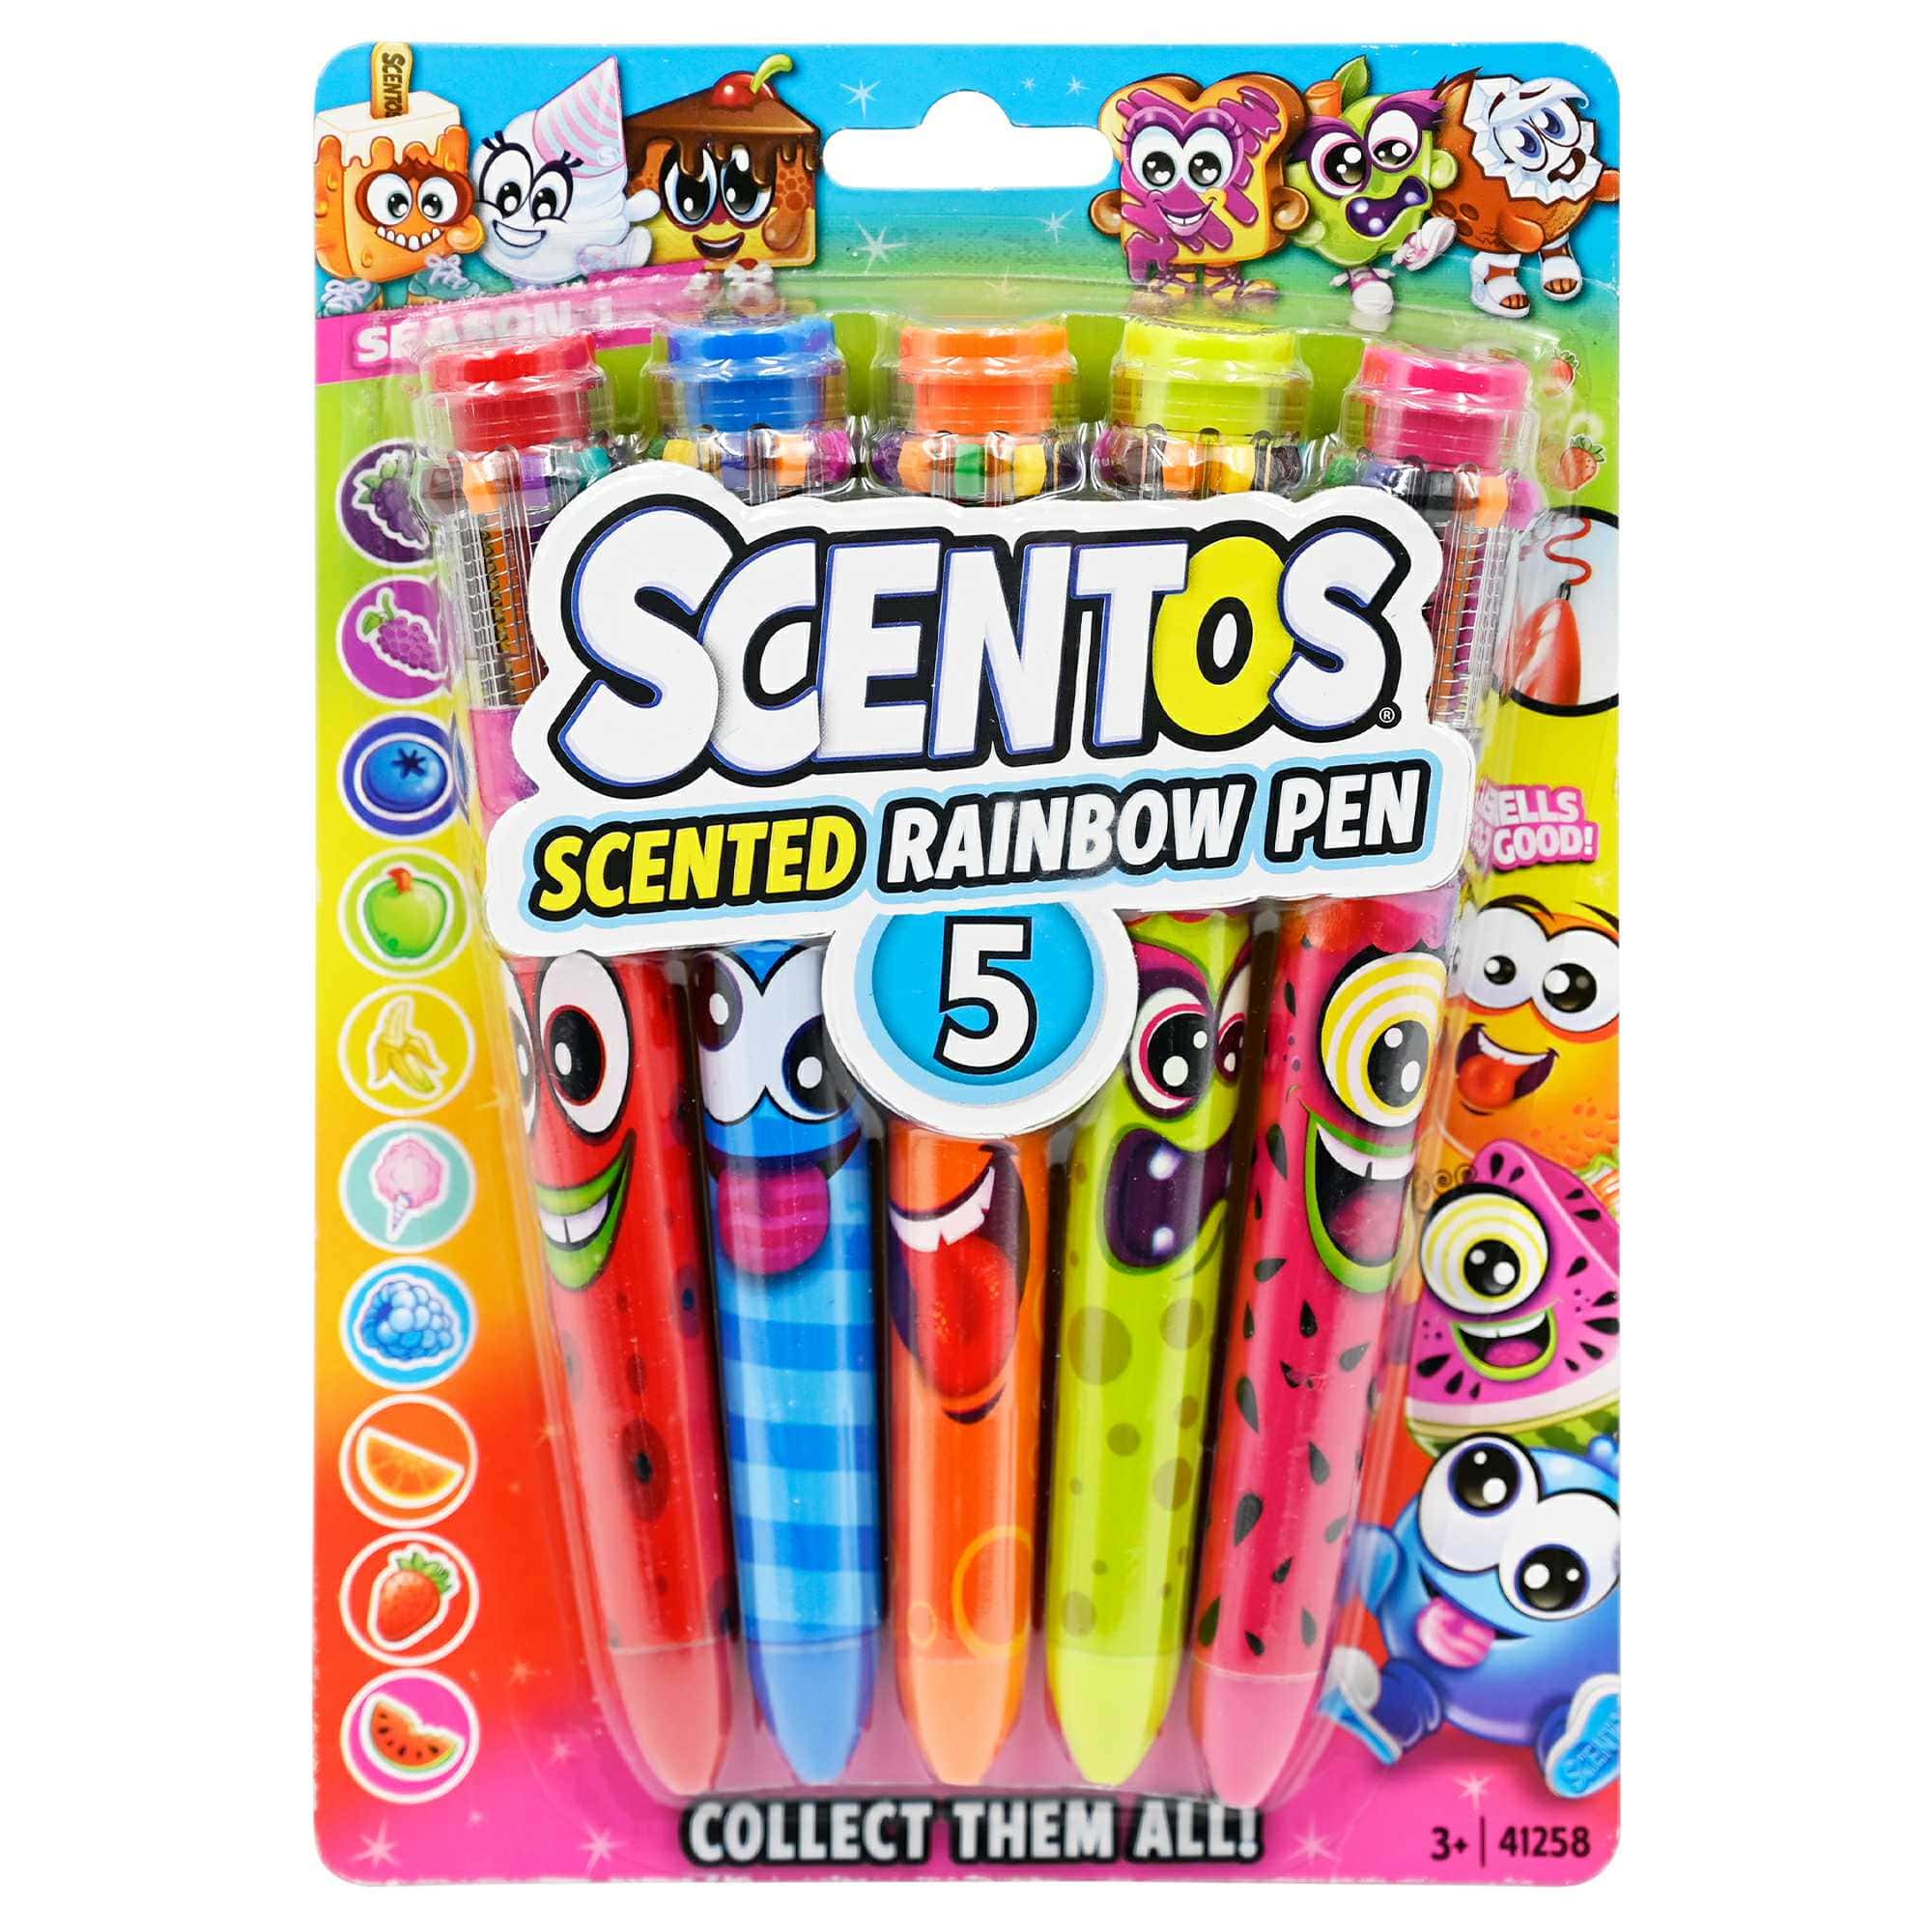 https://shopscentos.com/cdn/shop/files/shopscentos-gel-pen-scentos-scented-rainbow-pens-5-count-set-42933731066146.jpg?v=1698246363